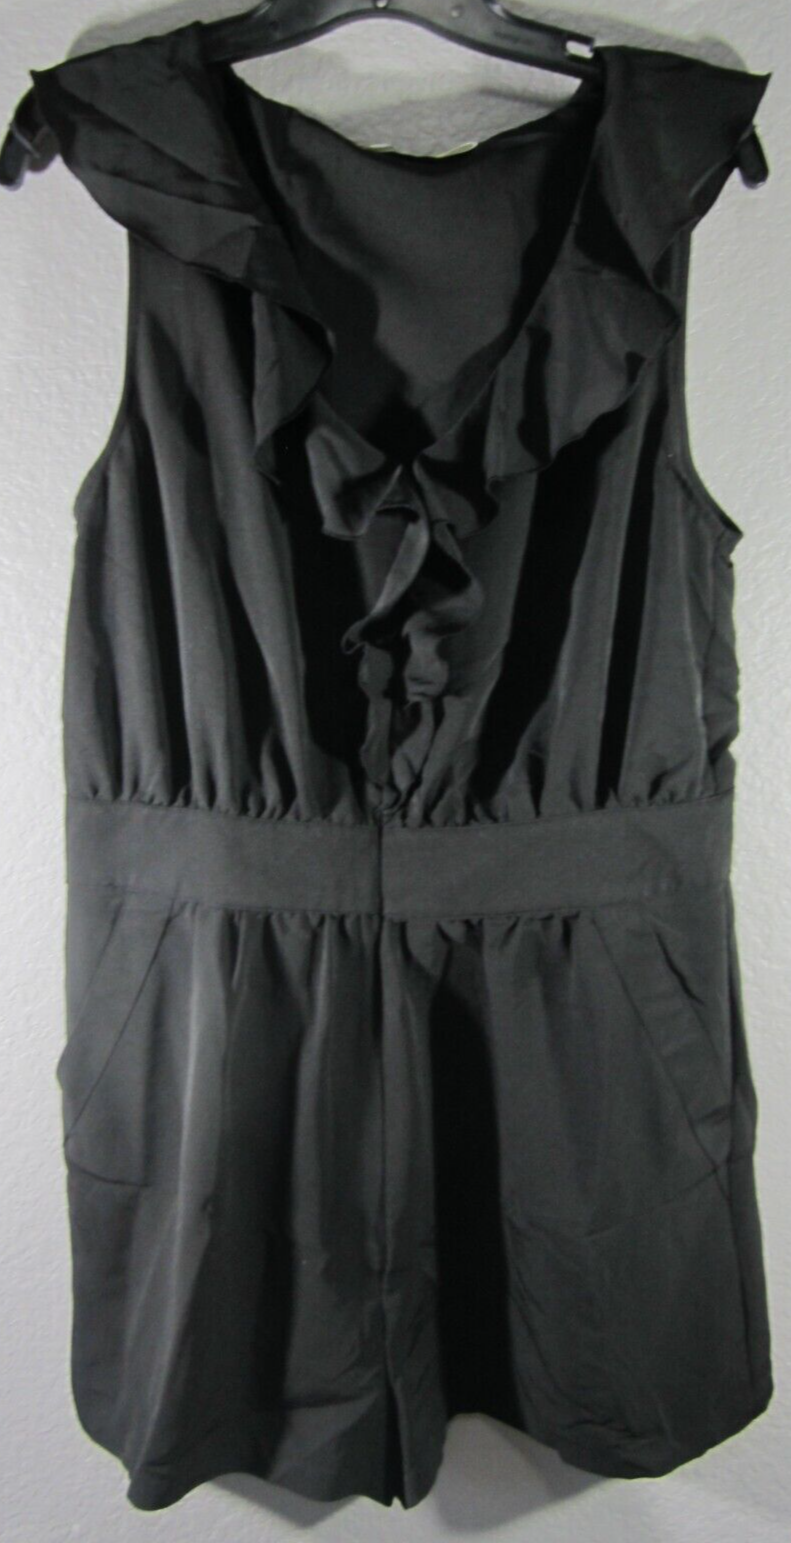 Primary image for Pins & Needle Black Ruffle Sleeveless Romper Jumpsuit Shorts Size 12 Medium